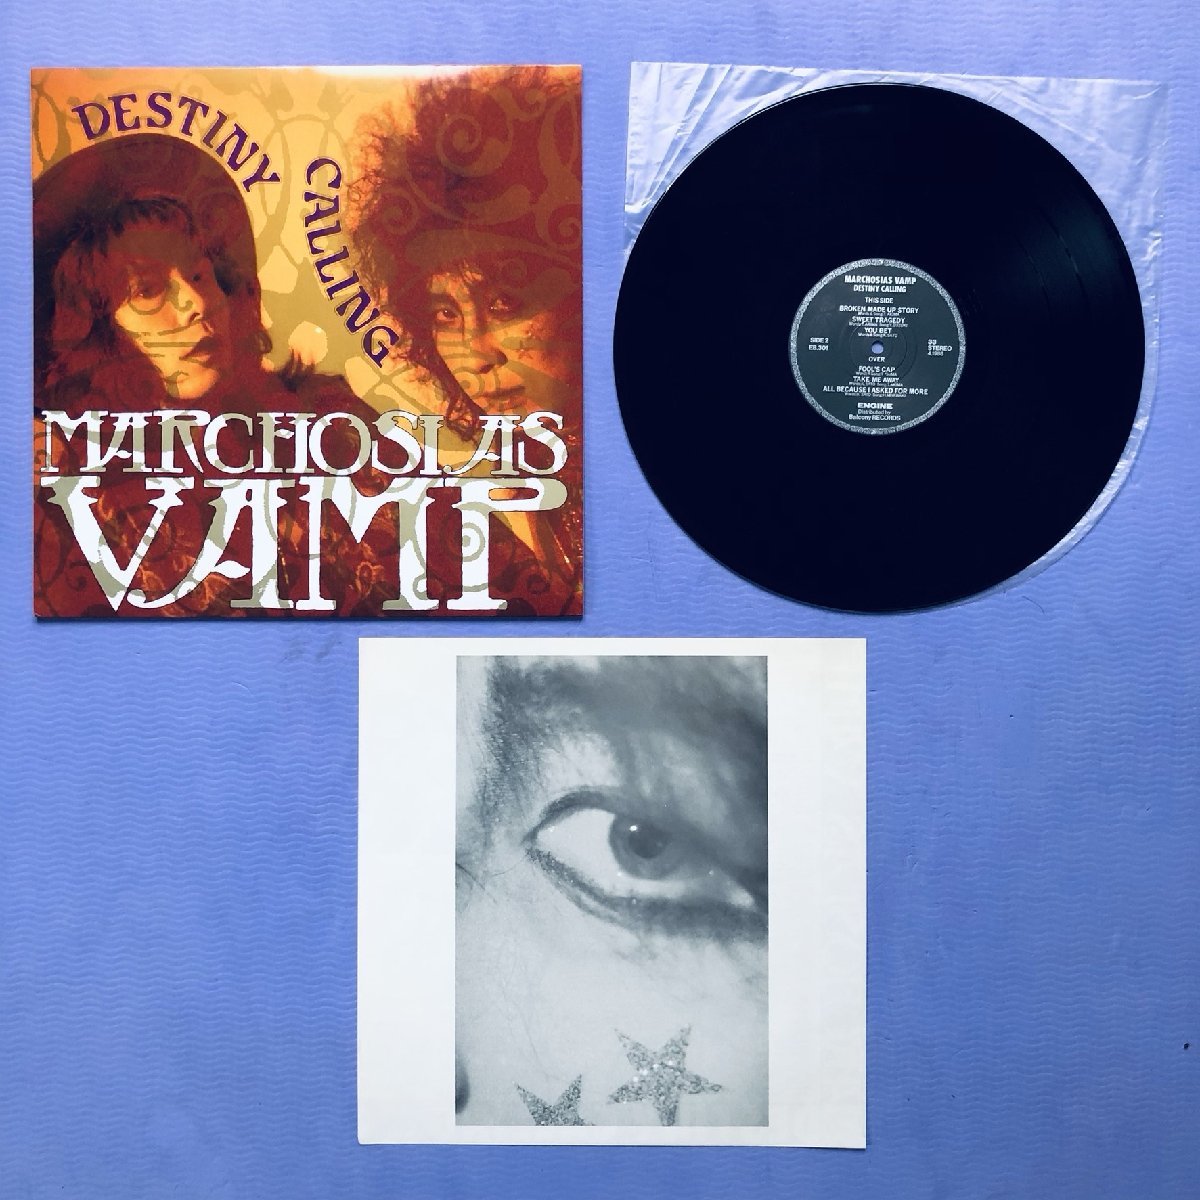 傷なし美盤 レア盤 マルコシアス・バンプ Marchosias Vamp 1988年 LPレコード デスティニー・コーリング Destiny Calling J-Rock イカ天_画像5